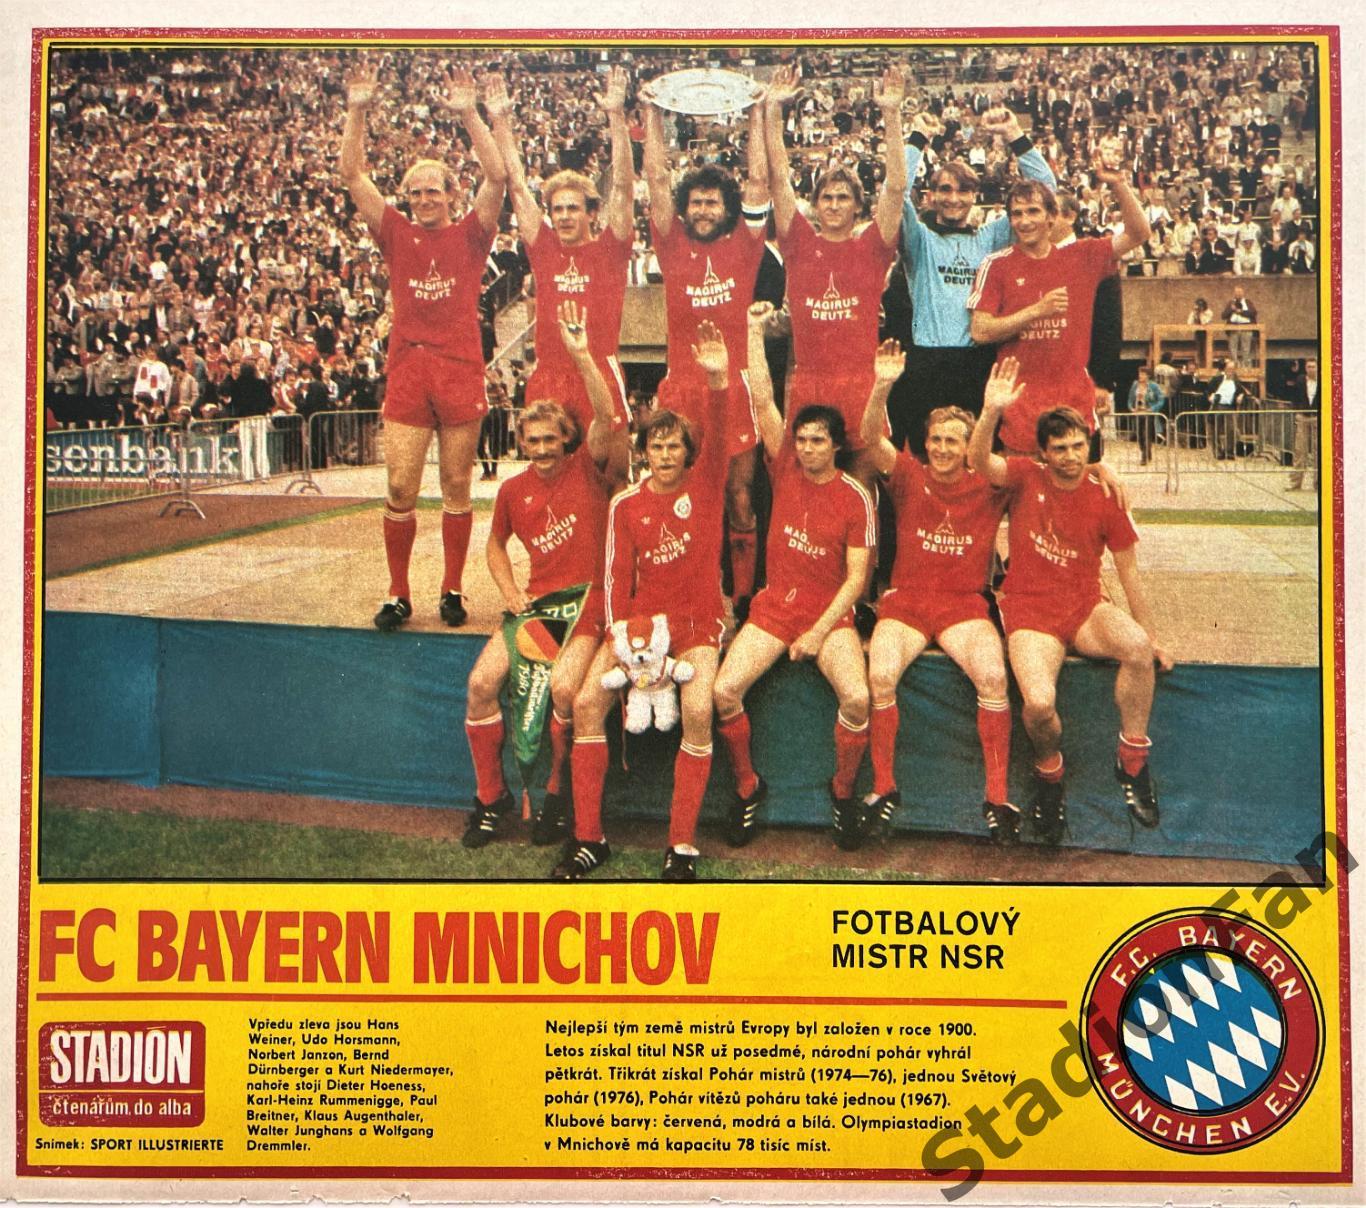 Постер из журнала Стадион (Stadion) - Bayern Mnichov, 1981.